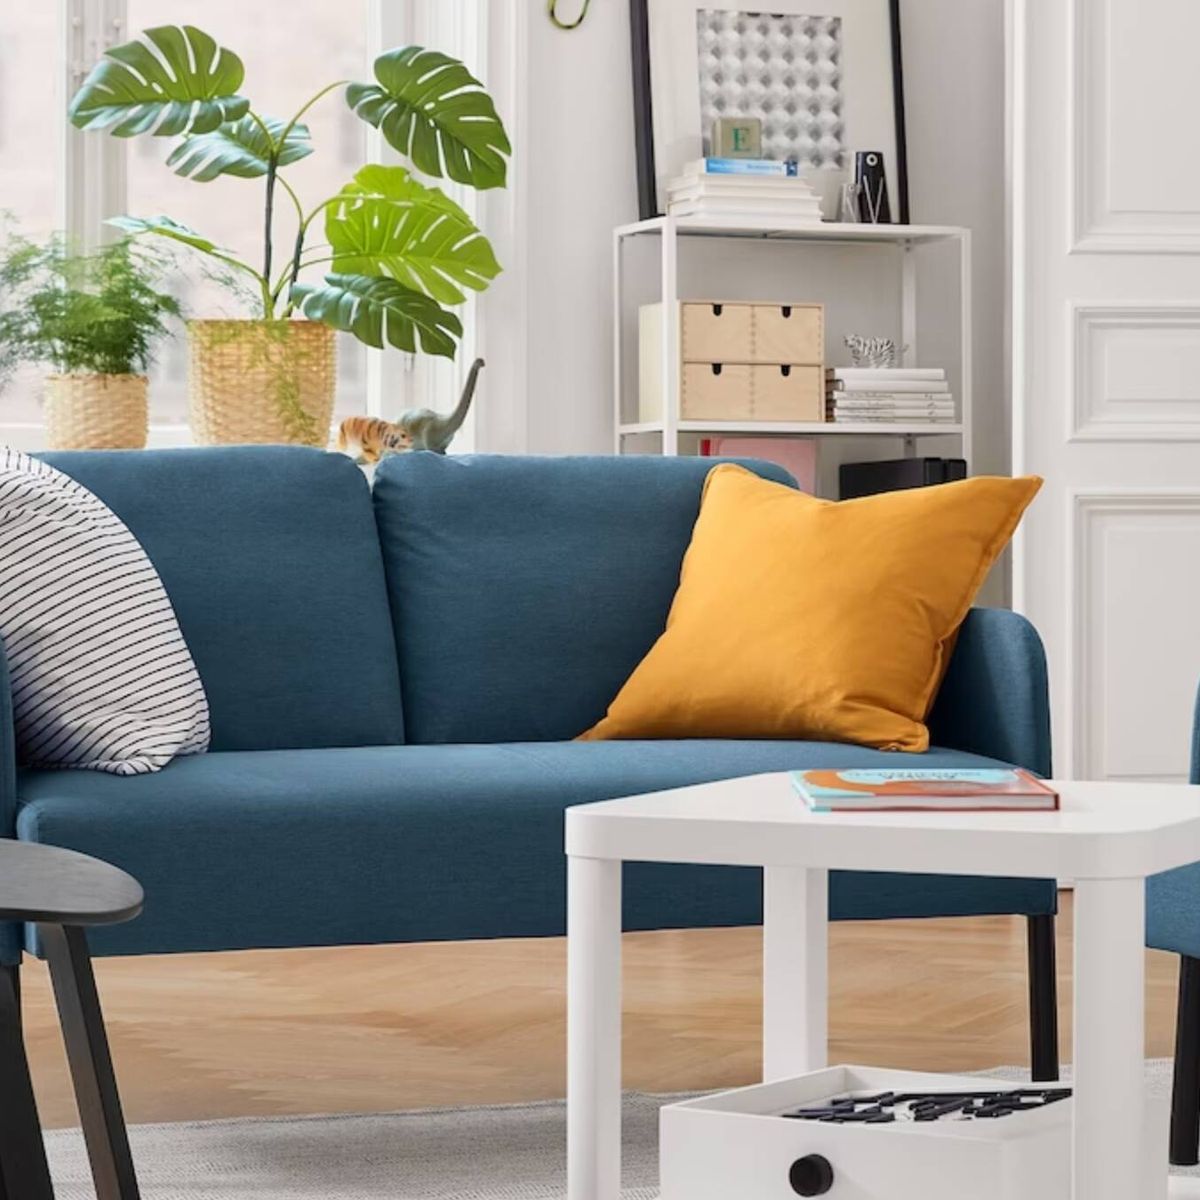 muebles low cost de Ikea una casa con mucho estilo